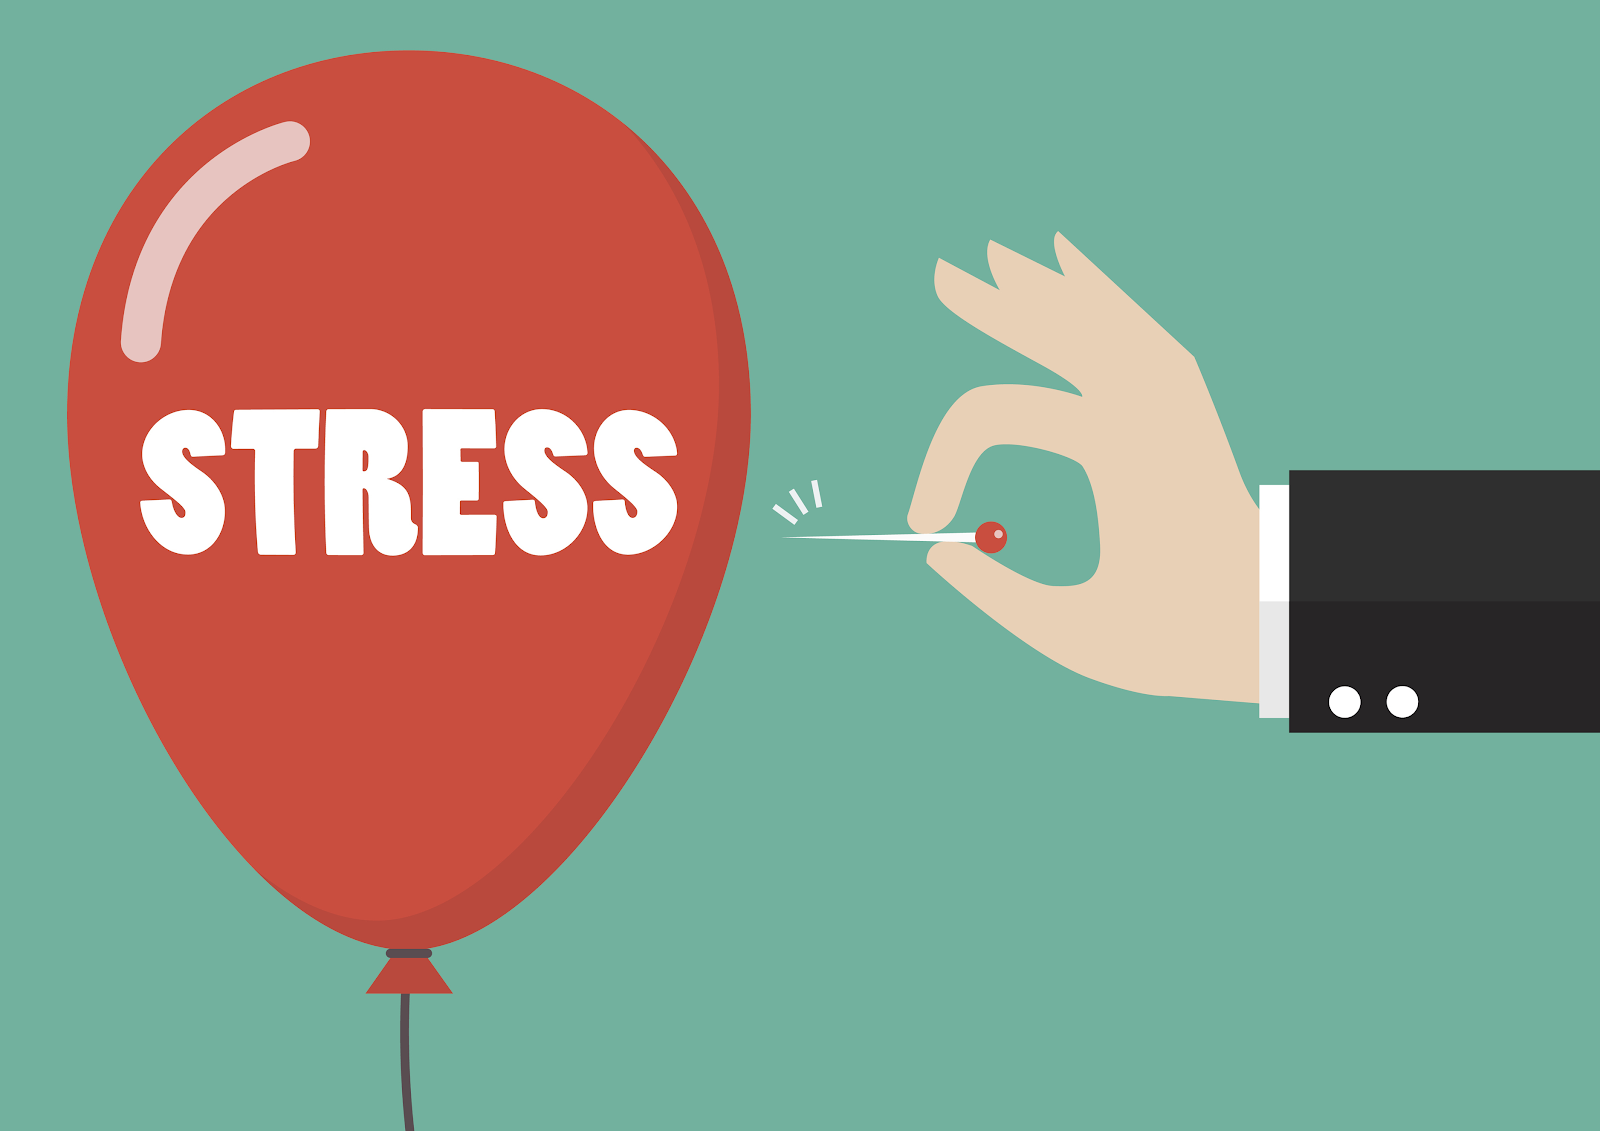 Có những từ nào để miêu tả sự căng thẳng trong công việc hoặc môi trường làm việc?
